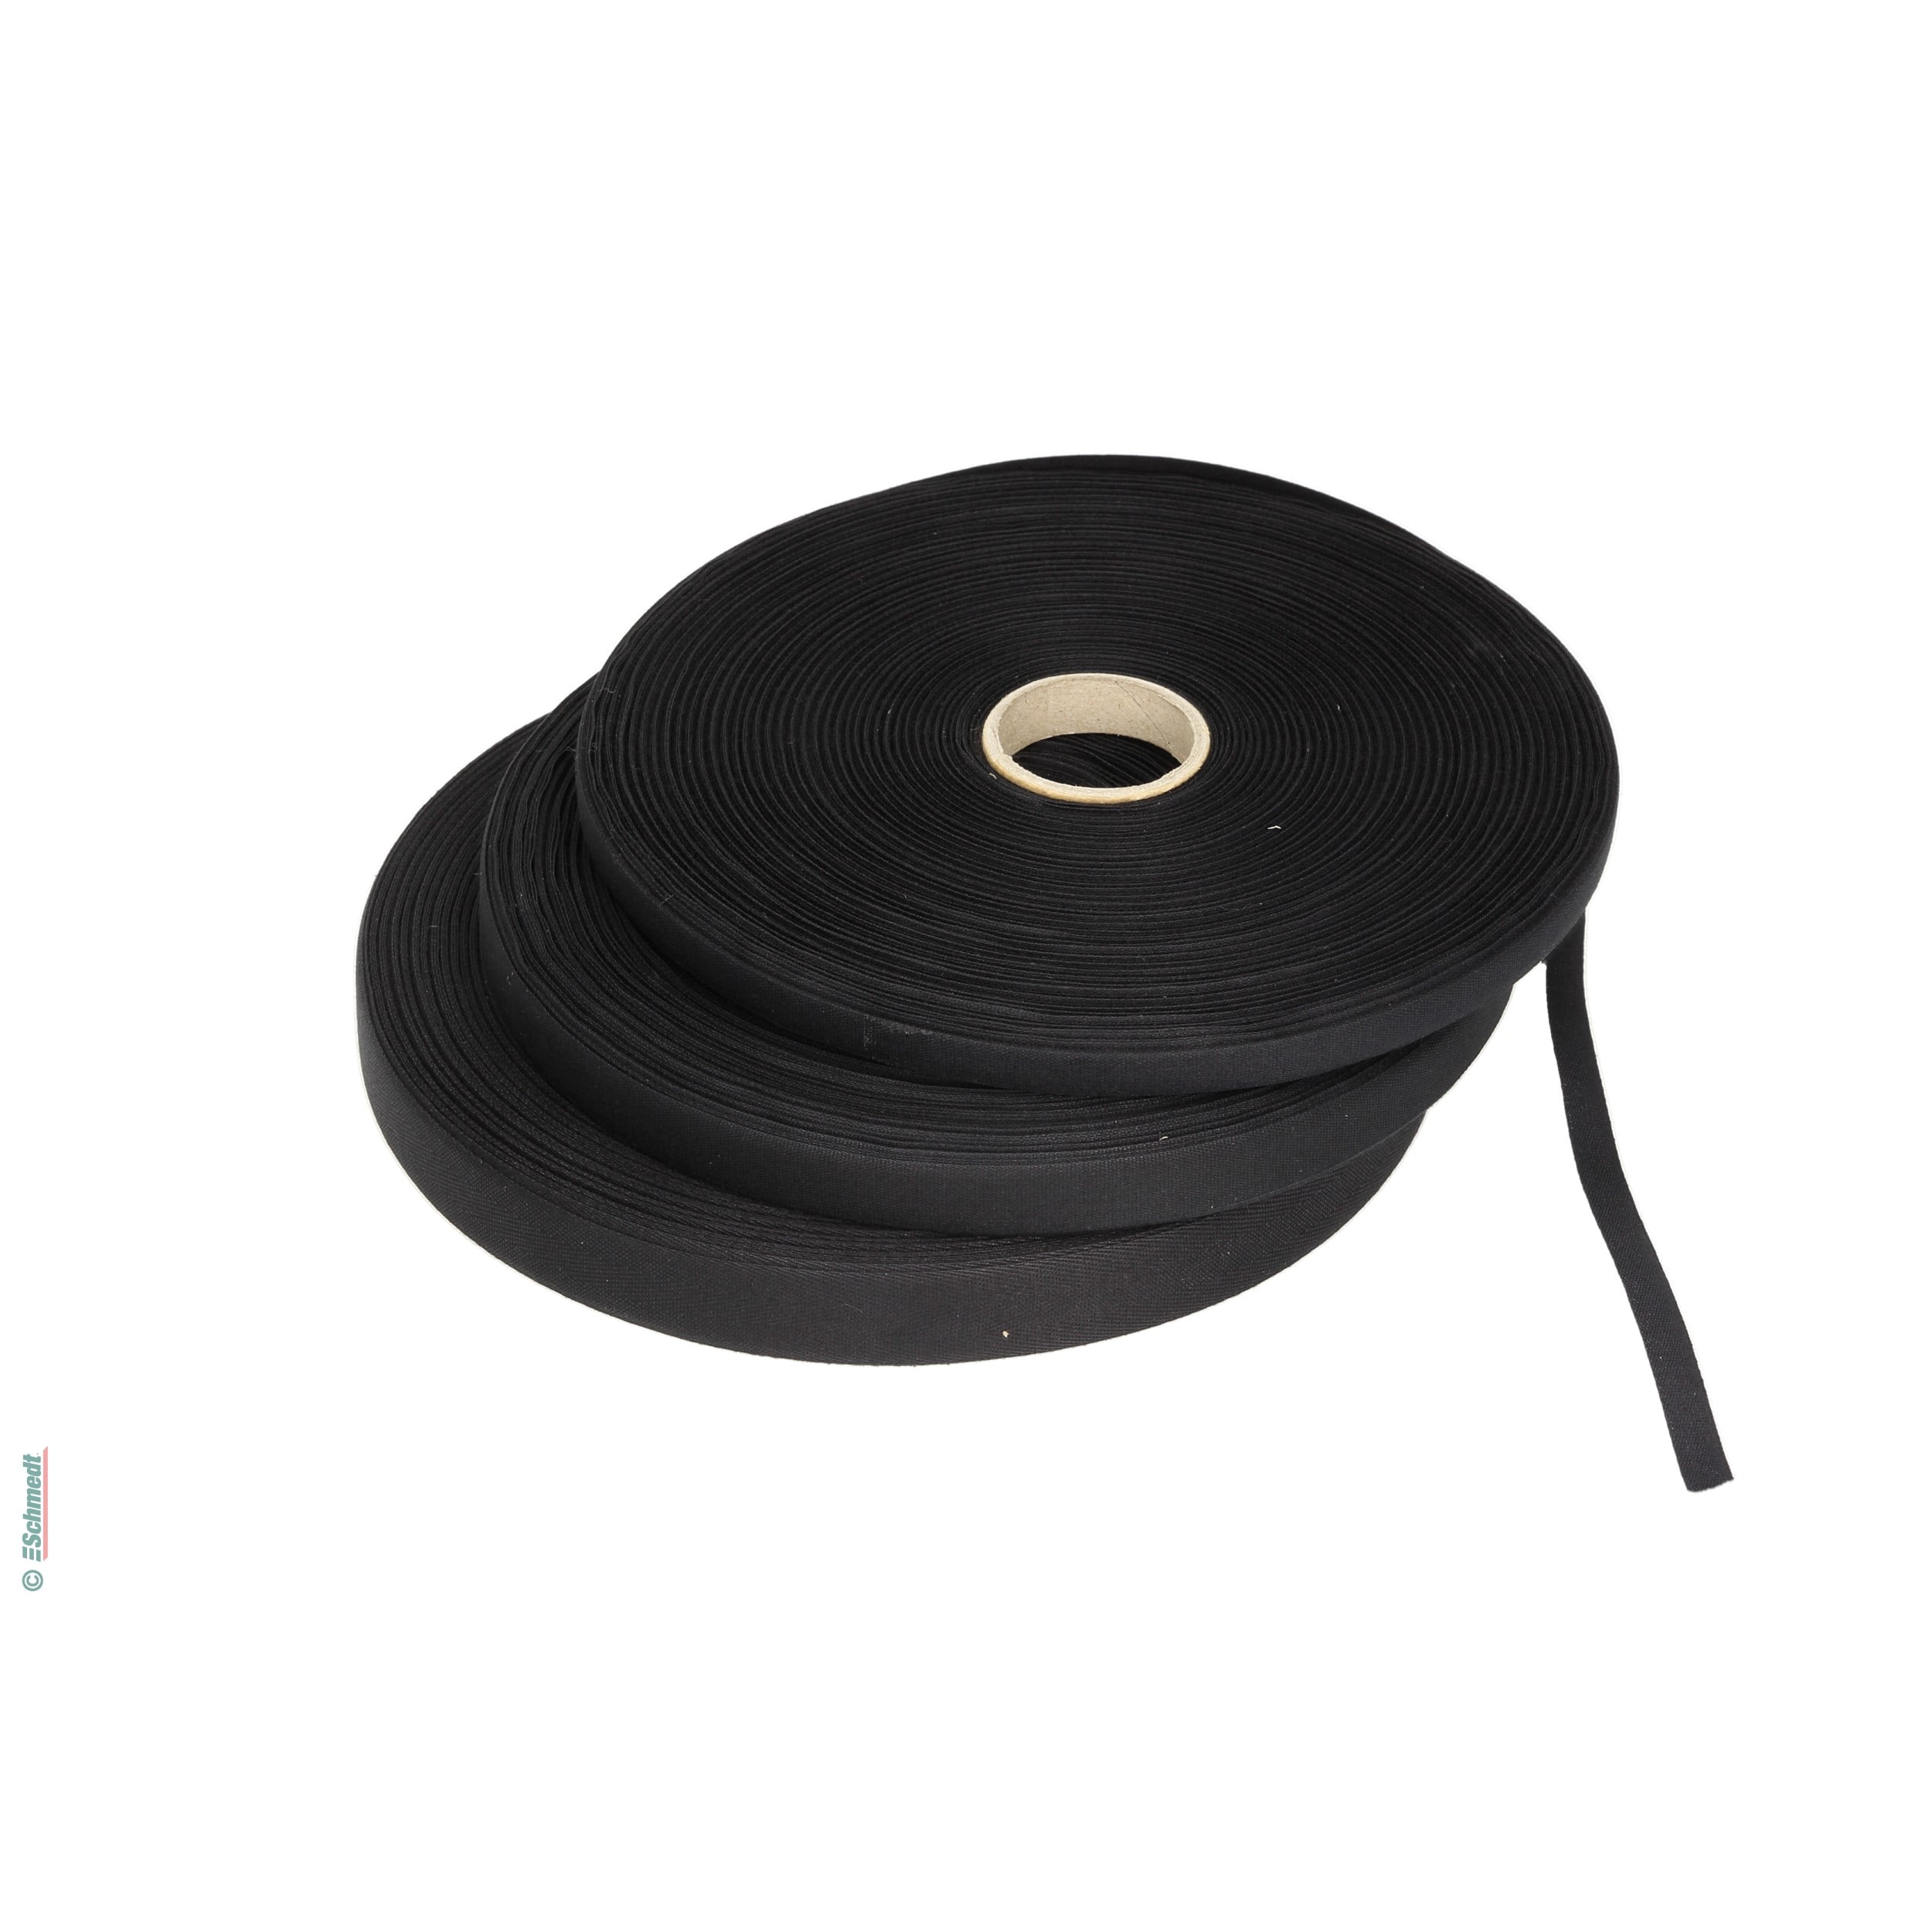 Cinta para carpetas - cinta fina de hilo - Anchura (en mm) 10 - Color negro - para cerrar carpetas y libros...